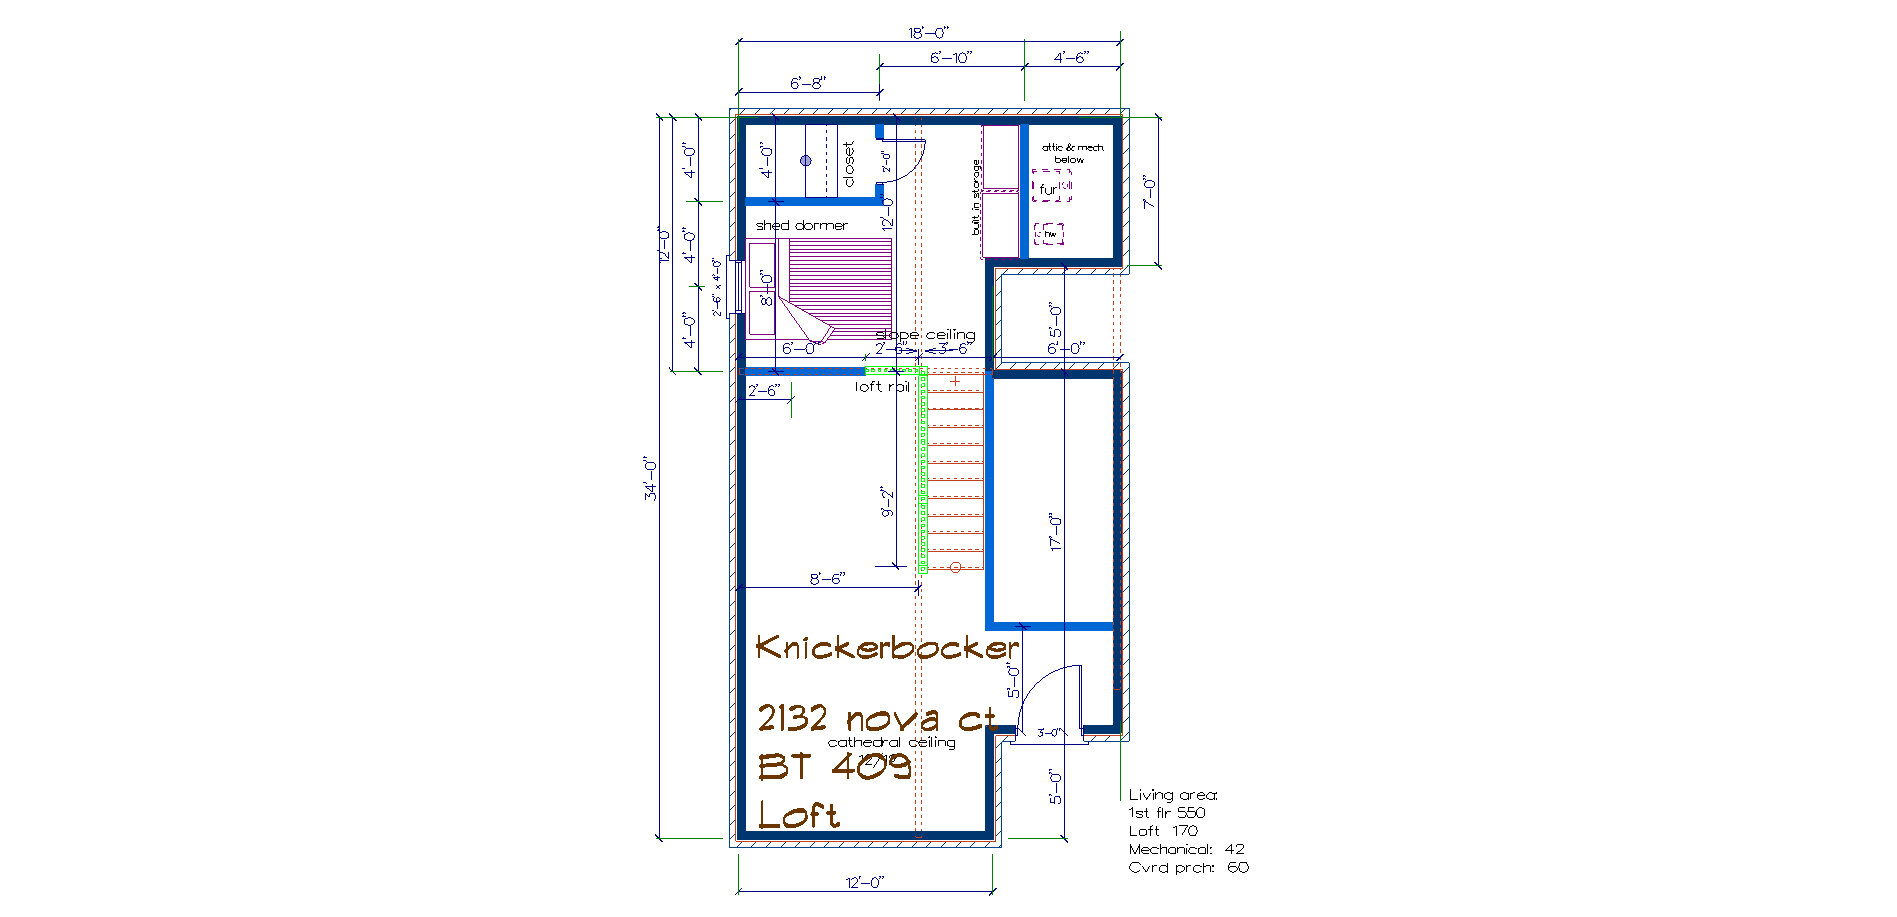 BT 409 Knickerbocker 2nd 2132 nova ct floor plan.jpg